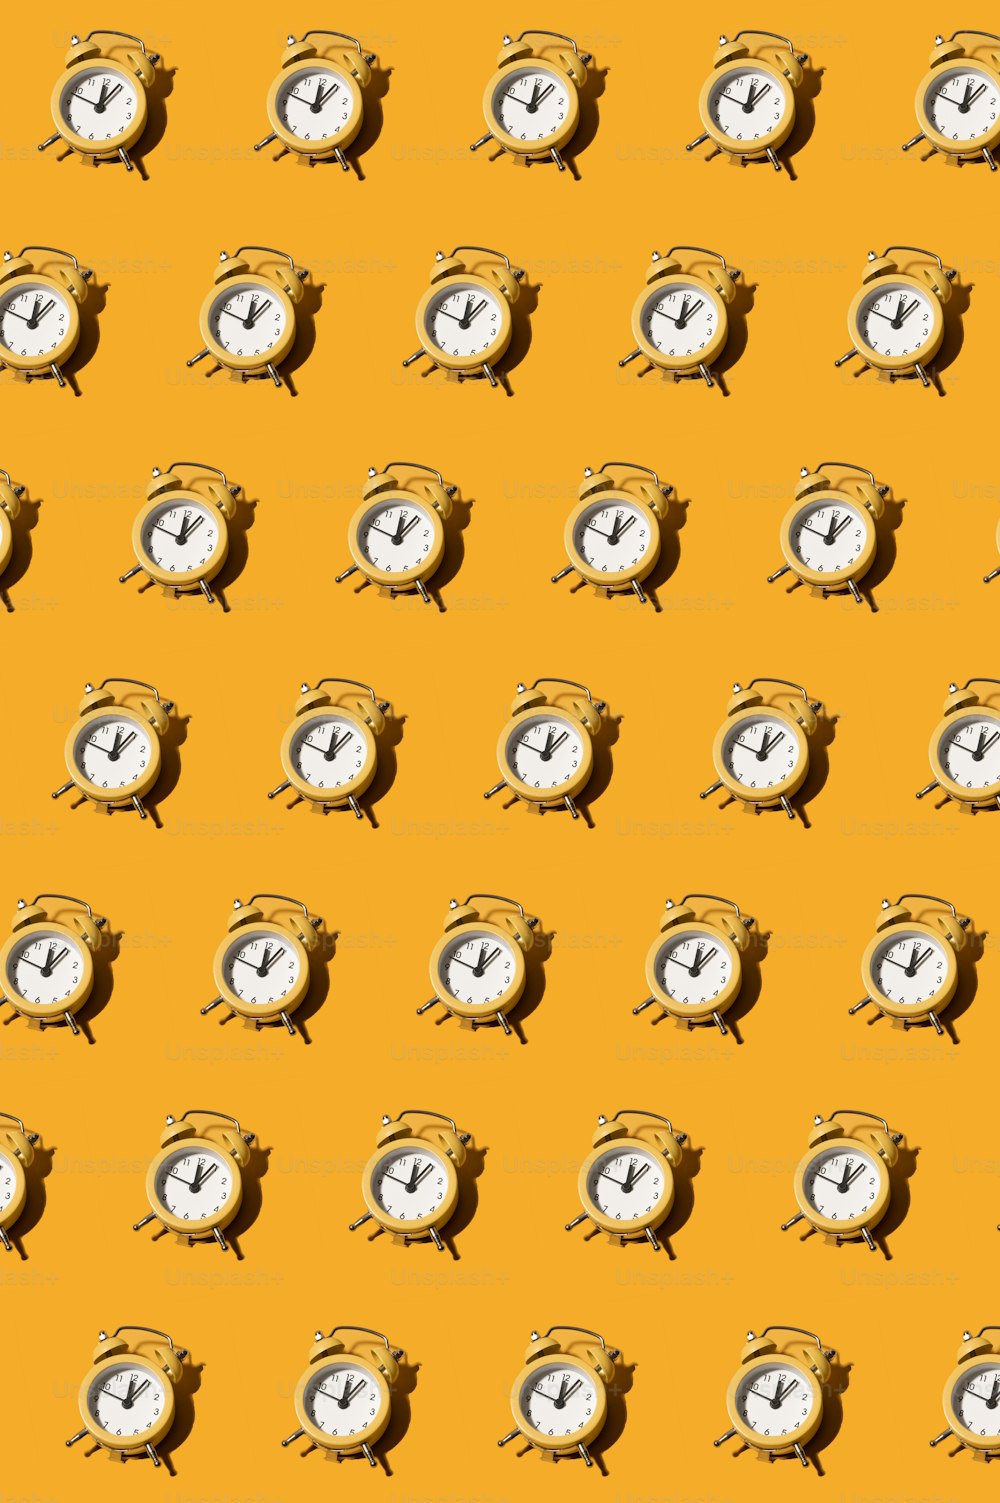 ein Muster von Uhren auf gelbem Hintergrund